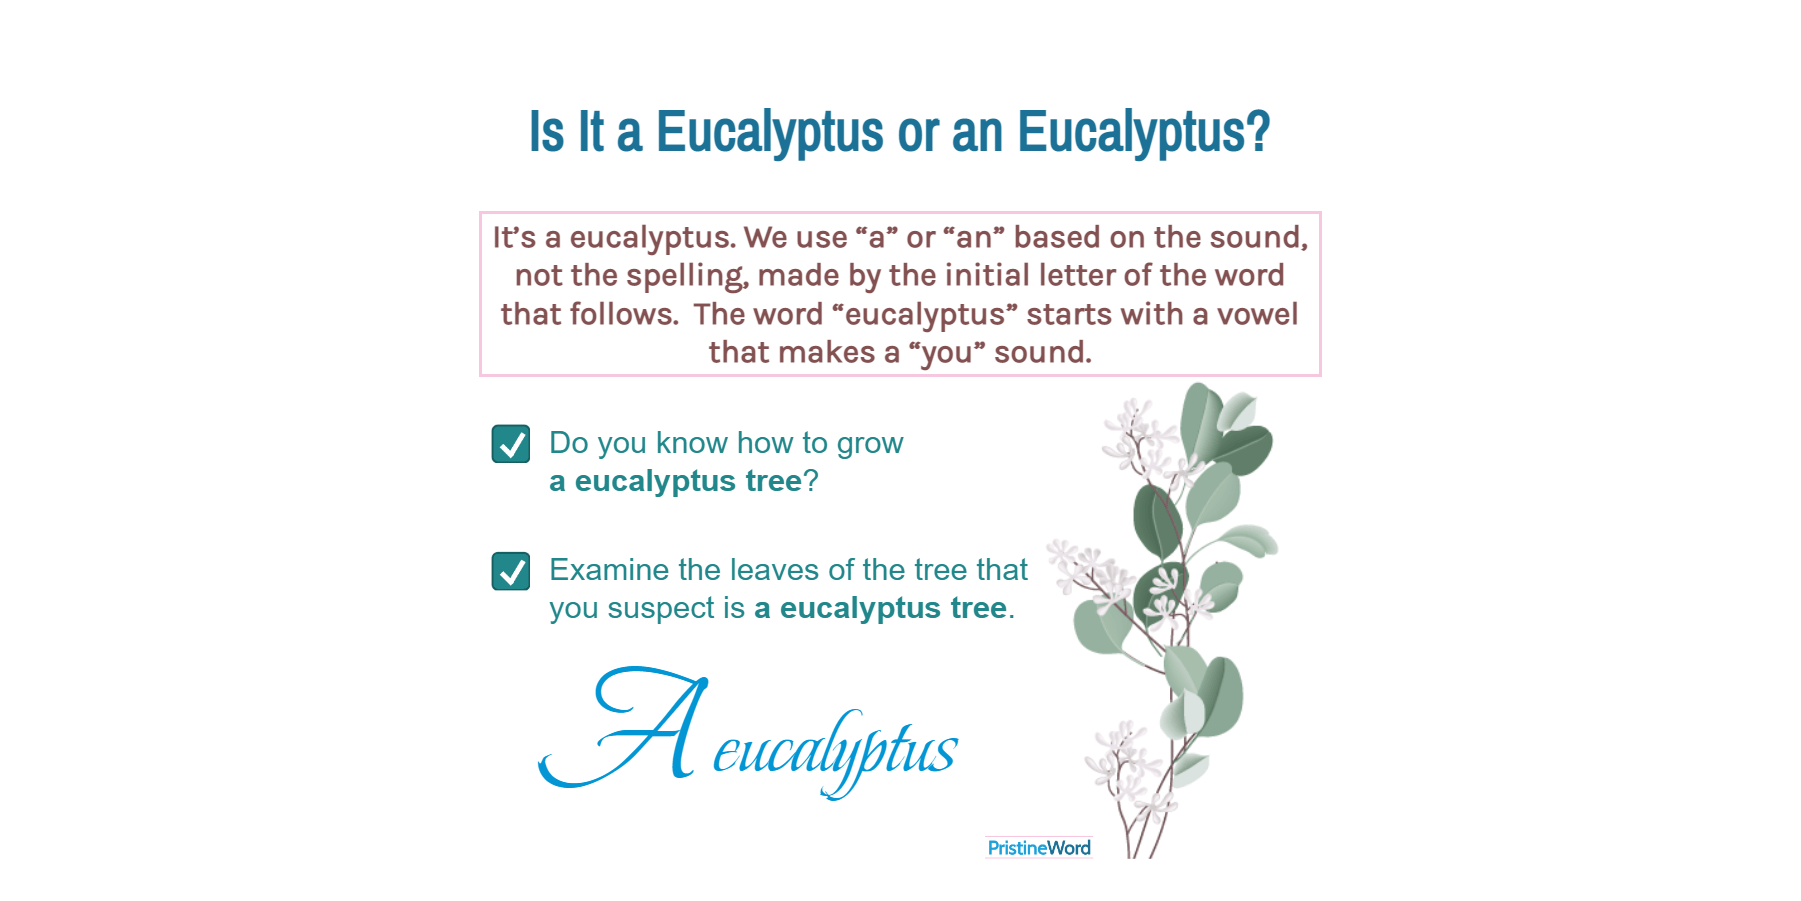 Is It A Eucalyptus or an Eucalyptus?